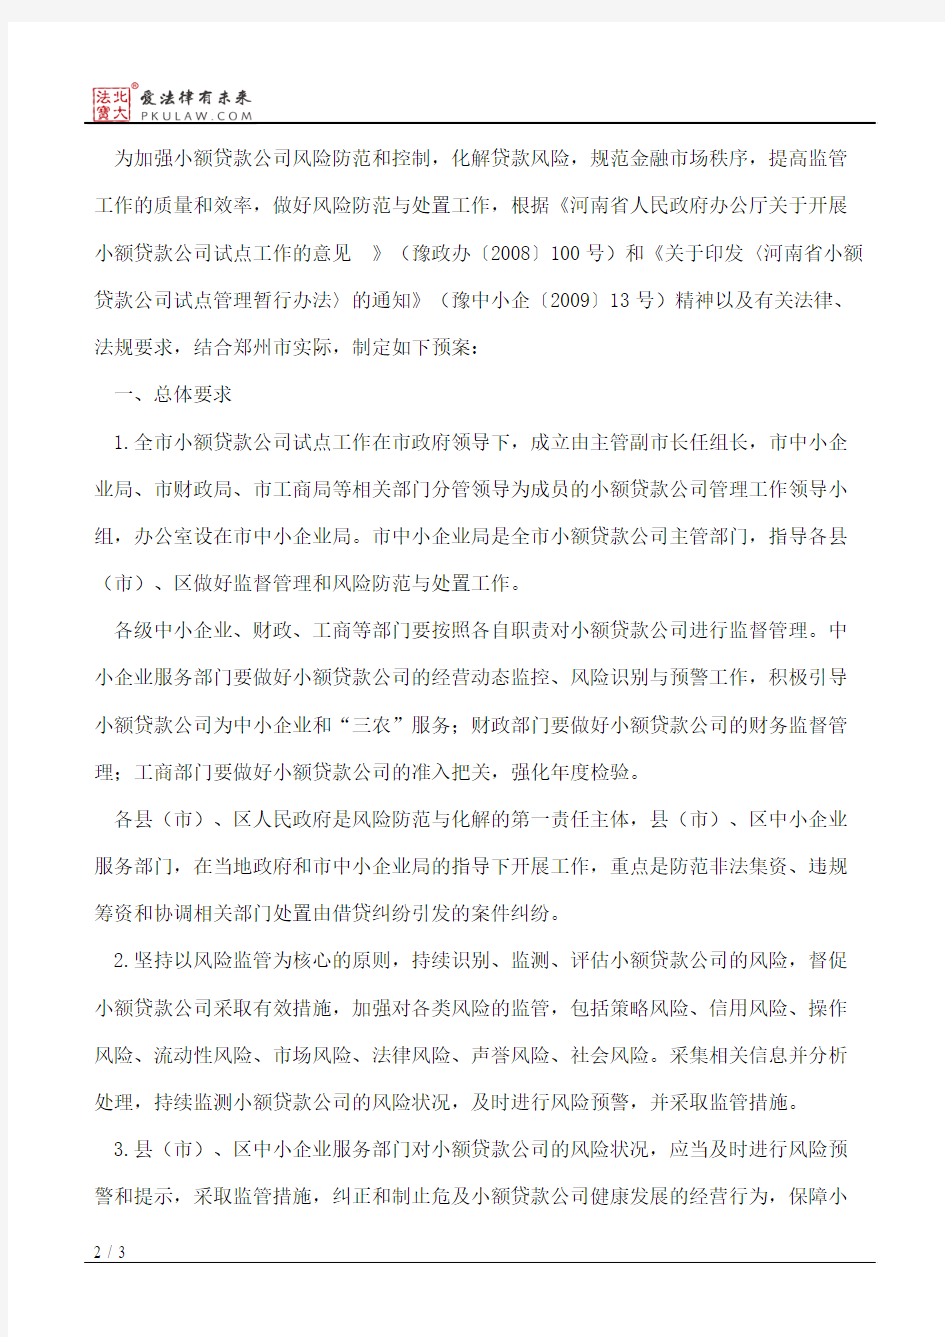 郑州市人民政府关于印发郑州市小额贷款公司风险防范与处置工作预